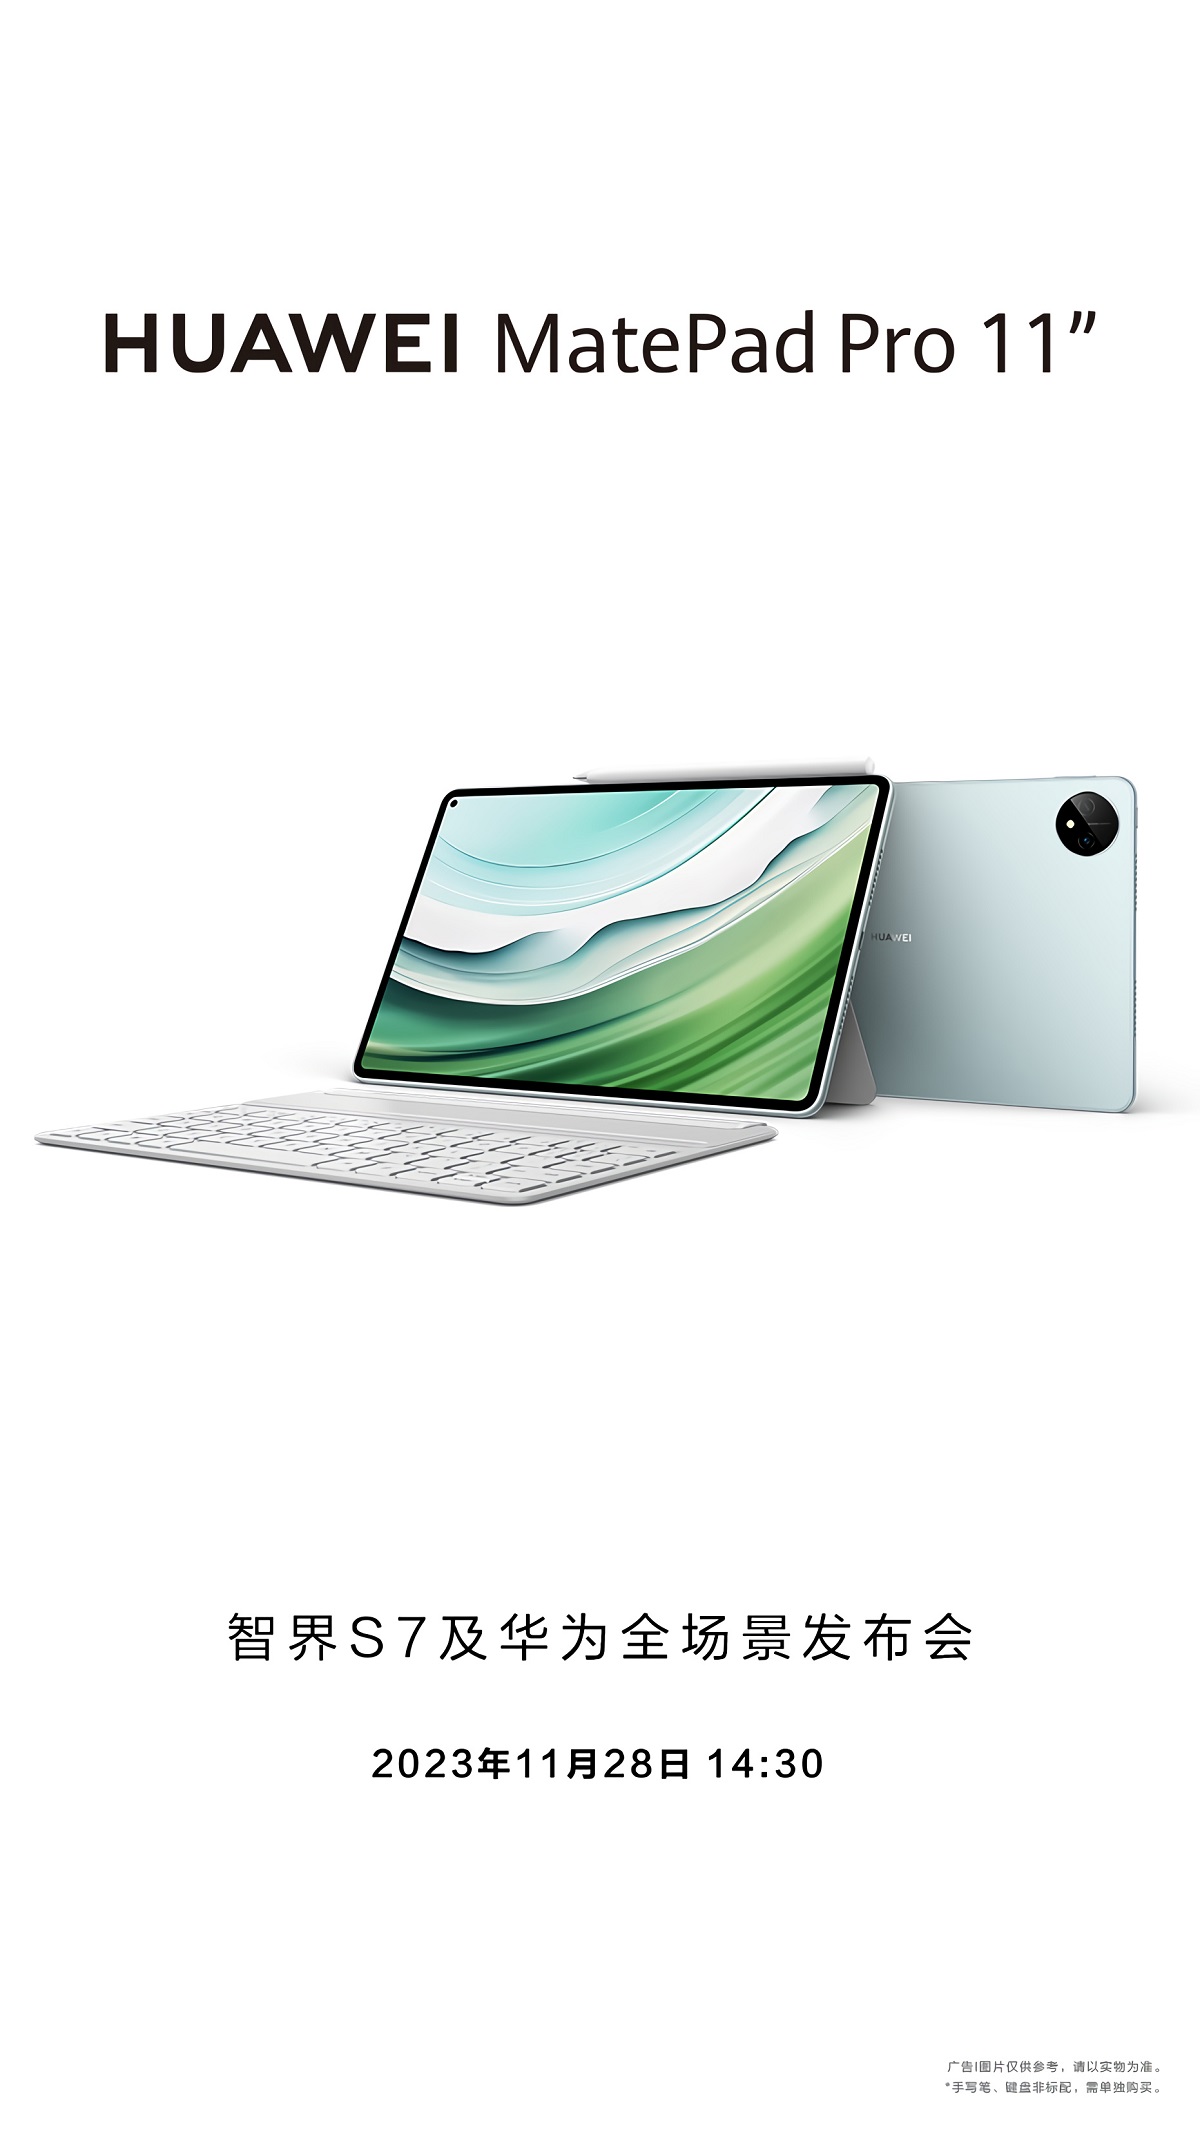 Huawei выпустит новый планшет MatePad Pro 11 28 ноября